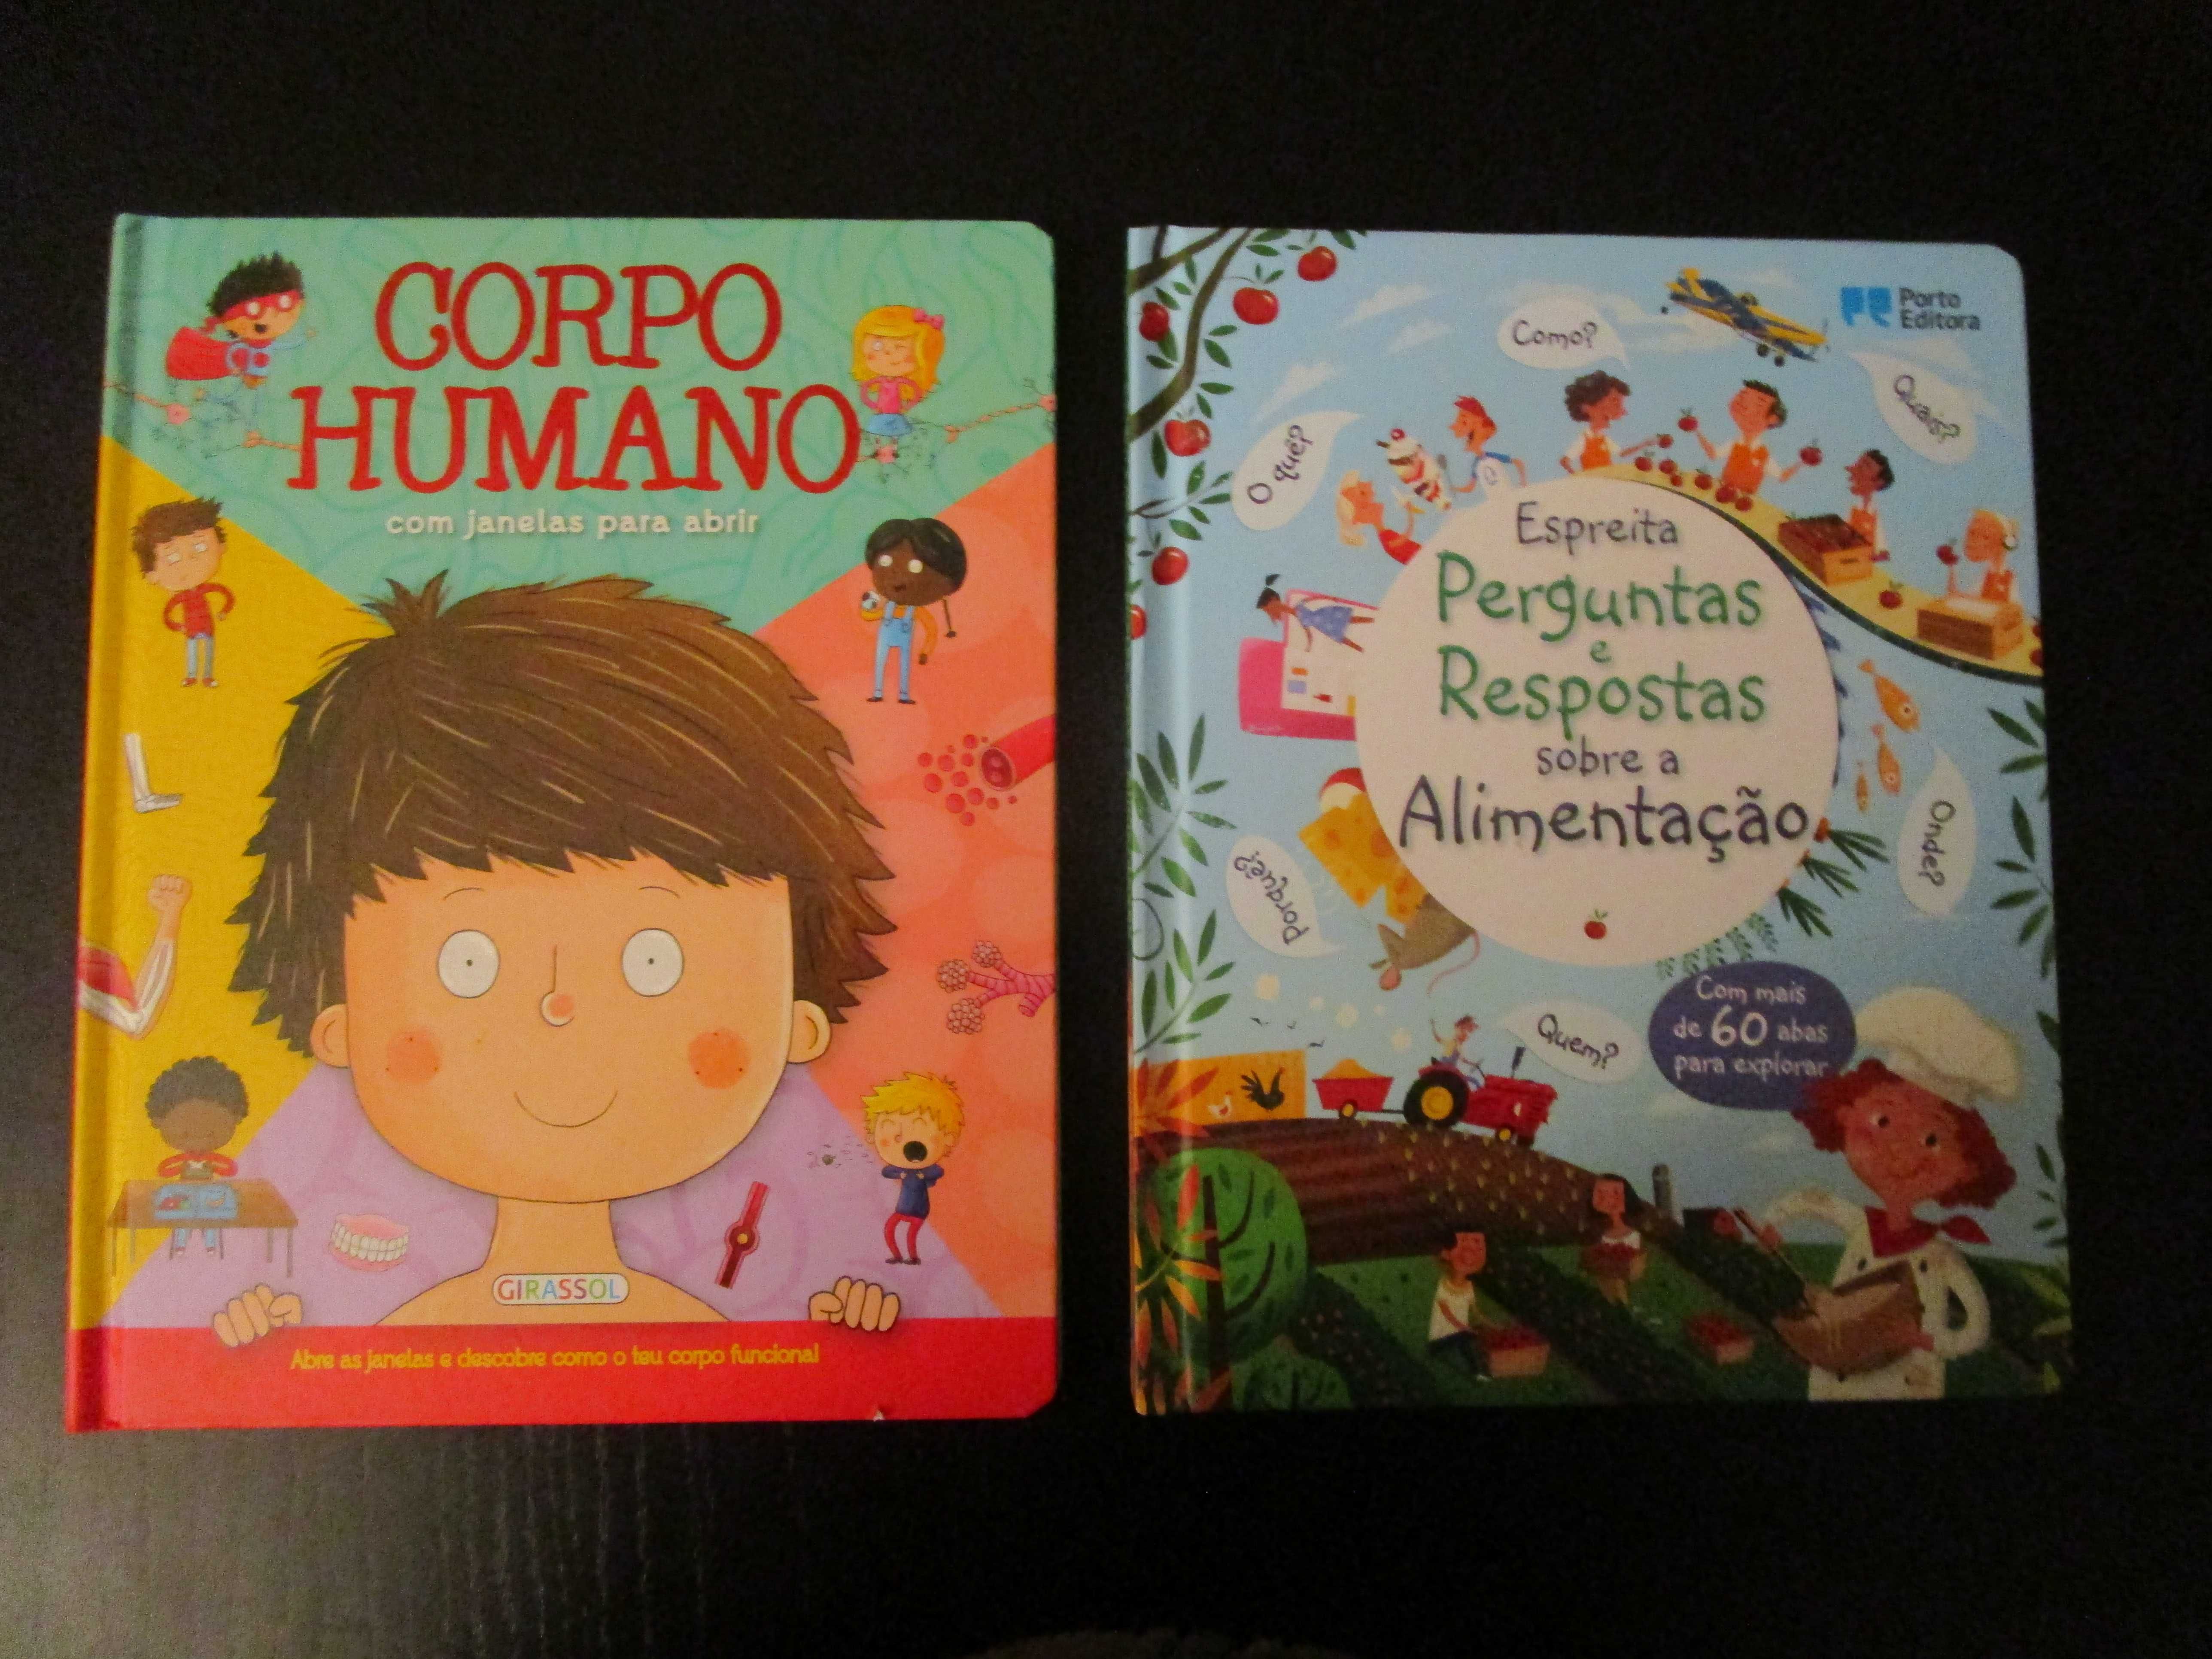 Livros educativos sobre a "Alimentação" e o "Corpo Humano" (10€ cada)